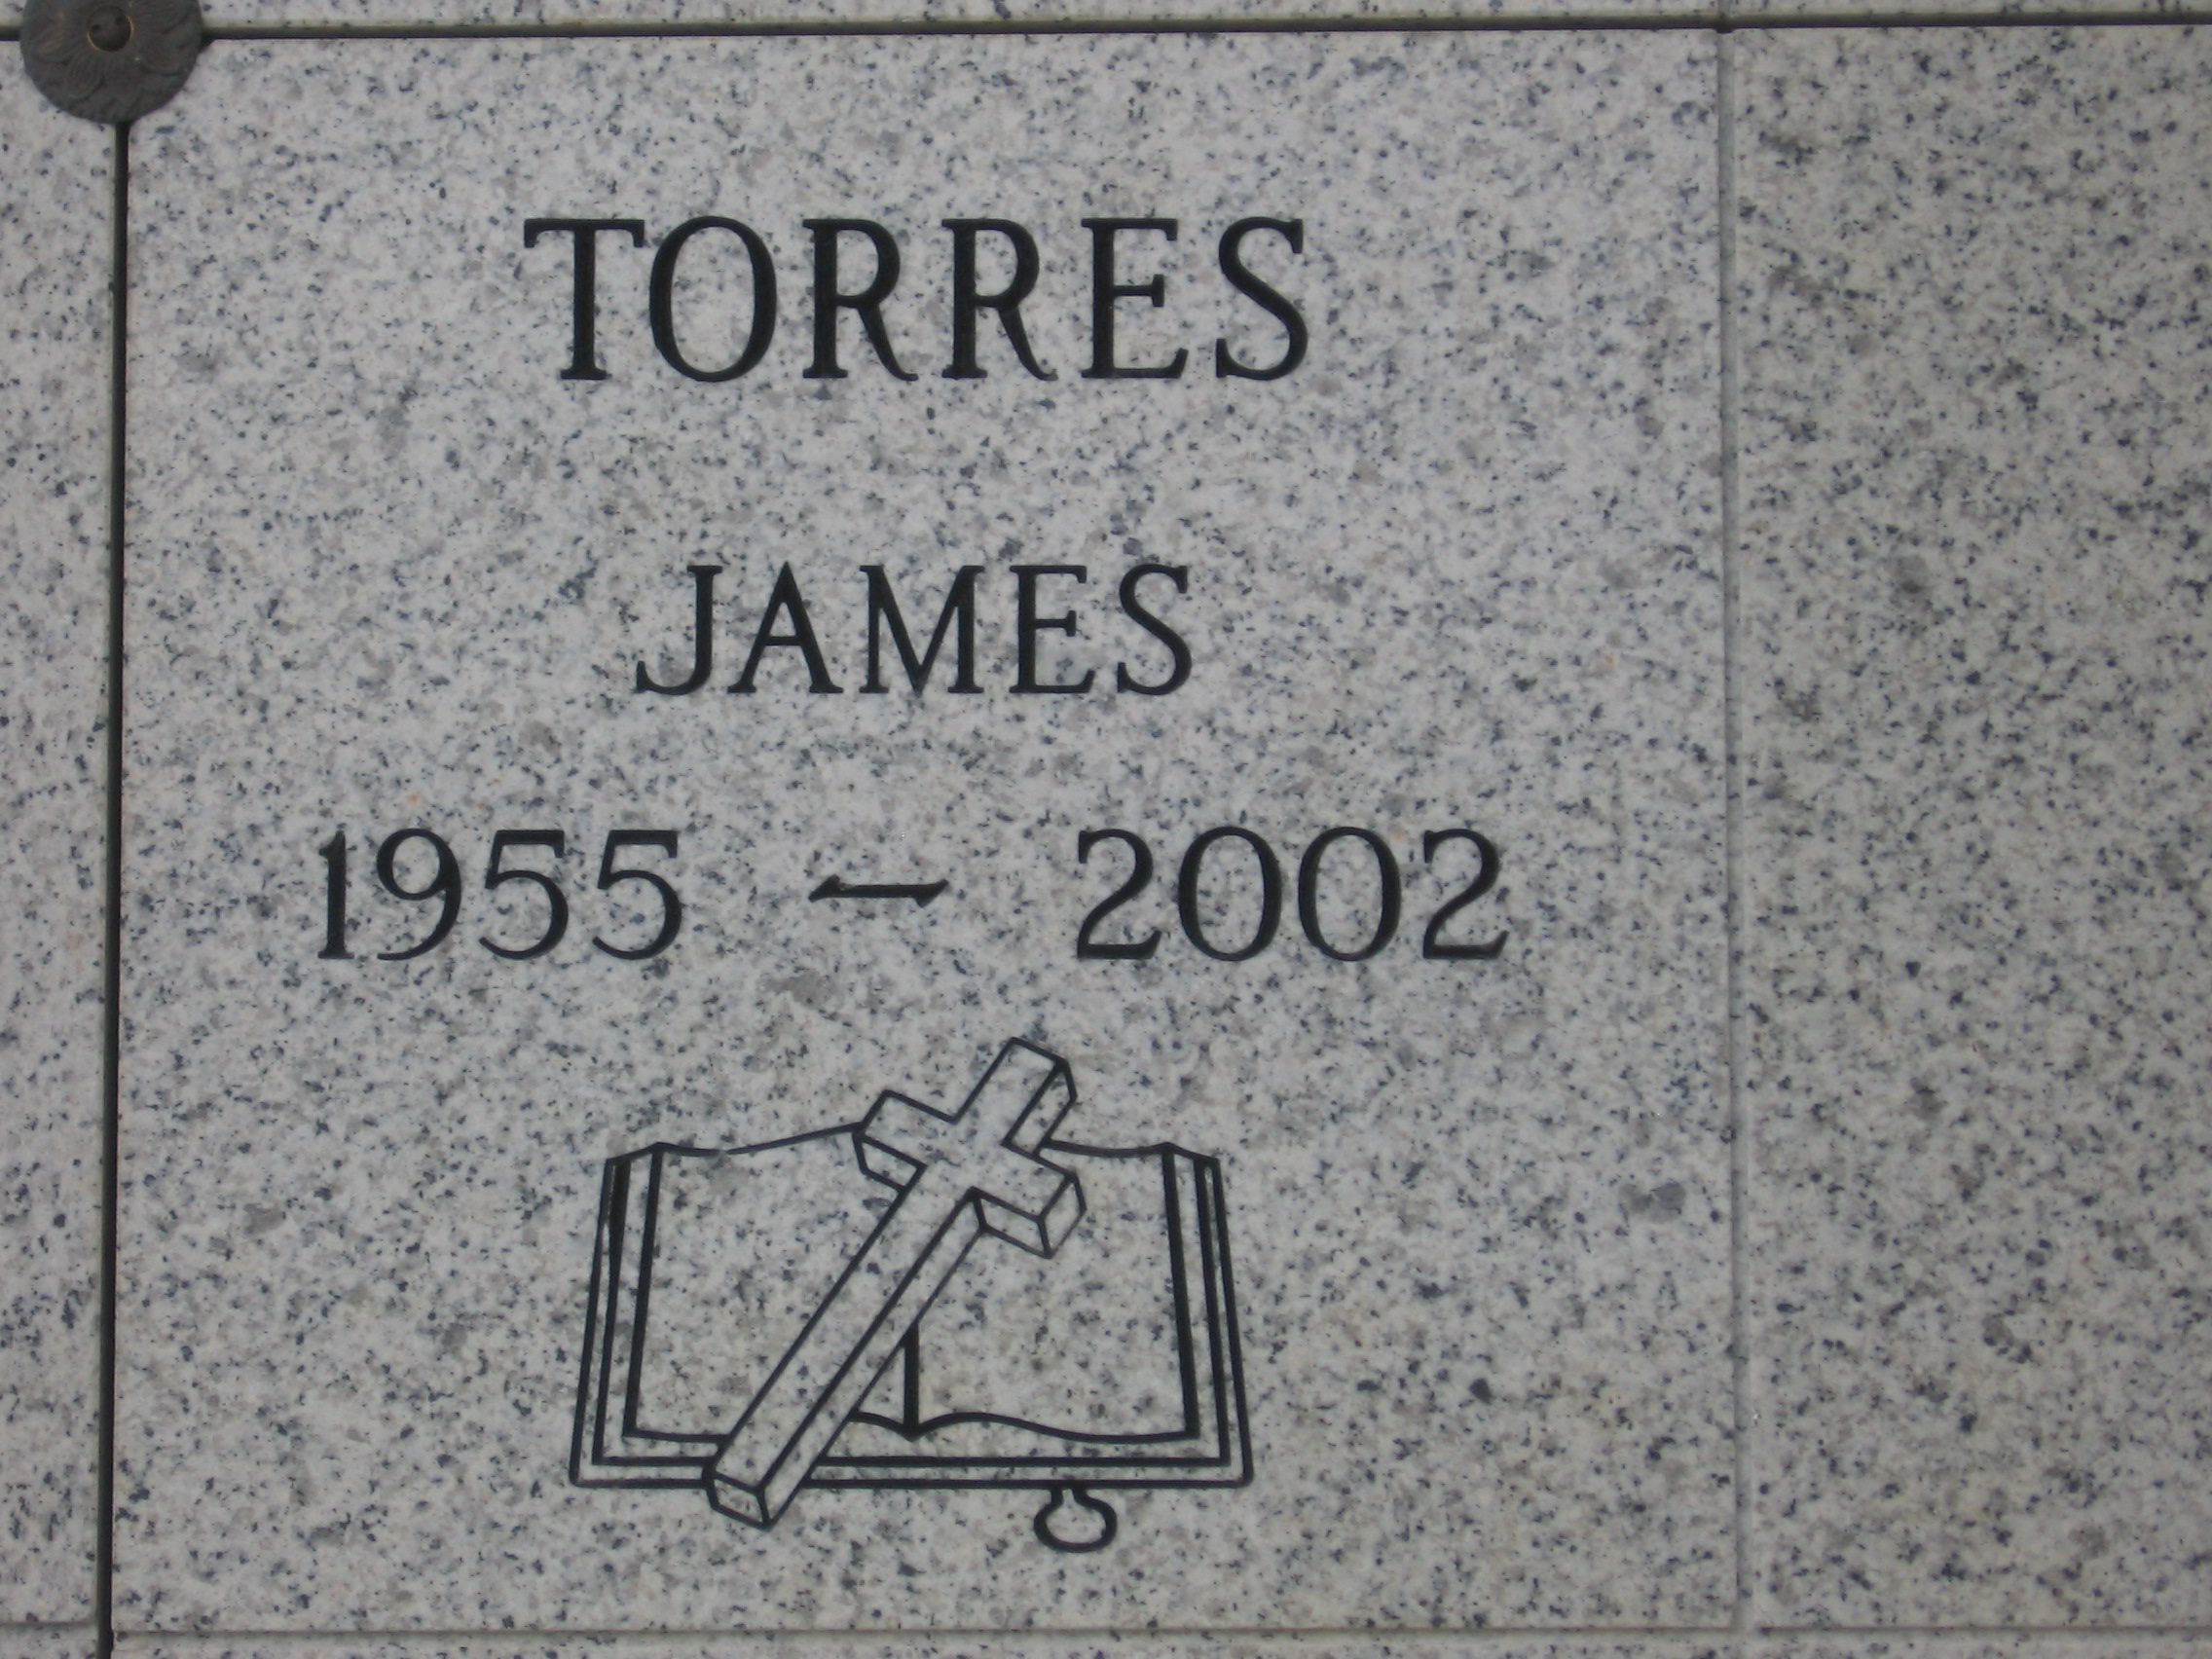 James Torres